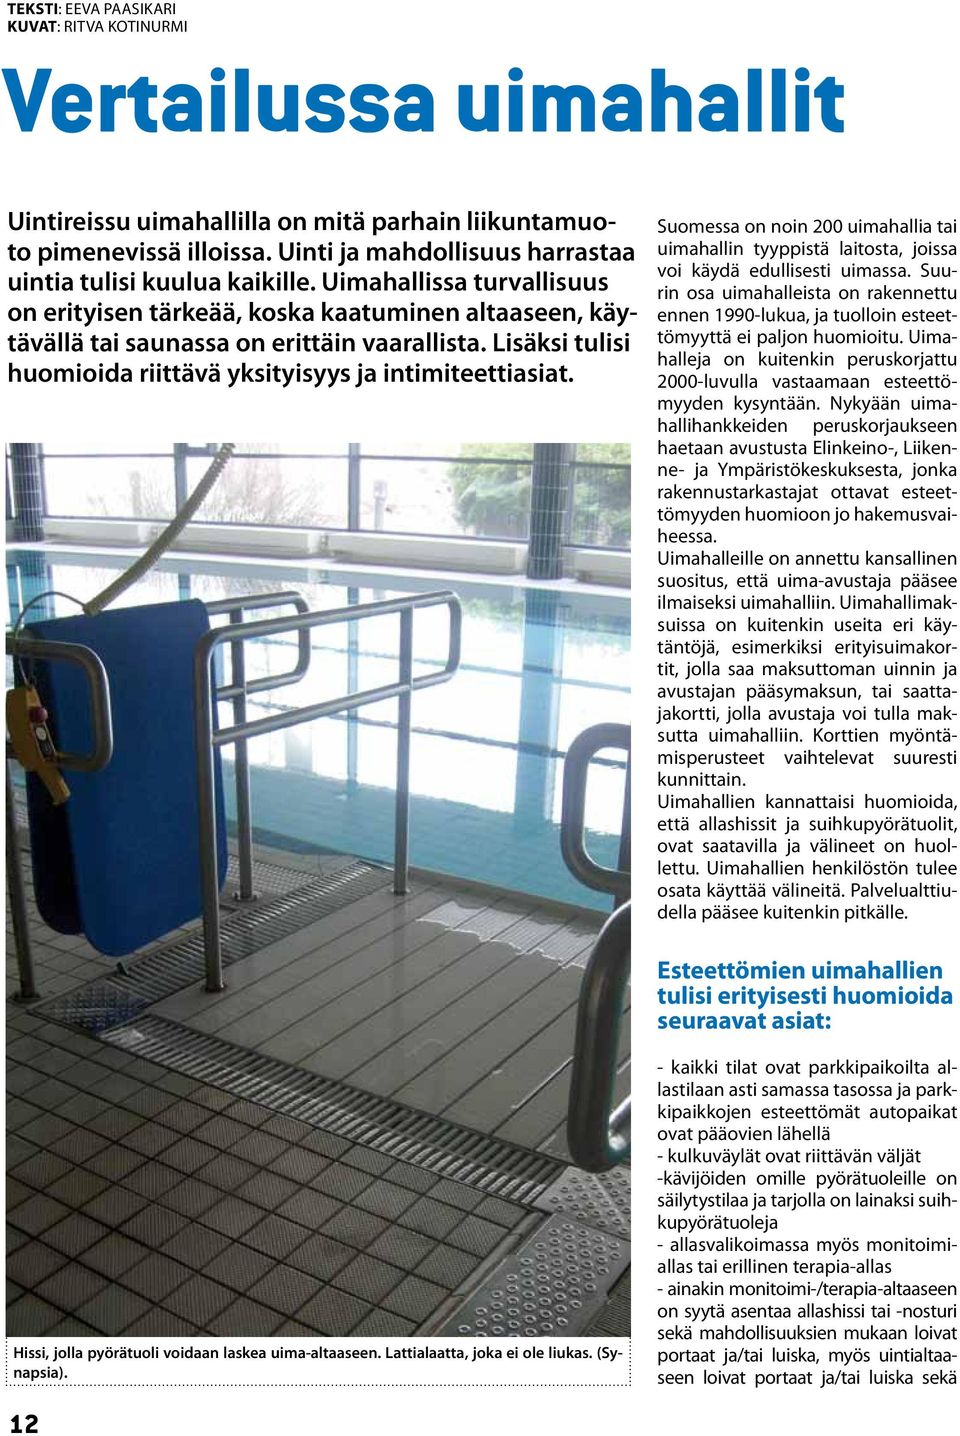 Lisäksi tulisi huomioida riittävä yksityisyys ja intimiteettiasiat. Suomessa on noin 200 uimahallia tai uimahallin tyyppistä laitosta, joissa voi käydä edullisesti uimassa.